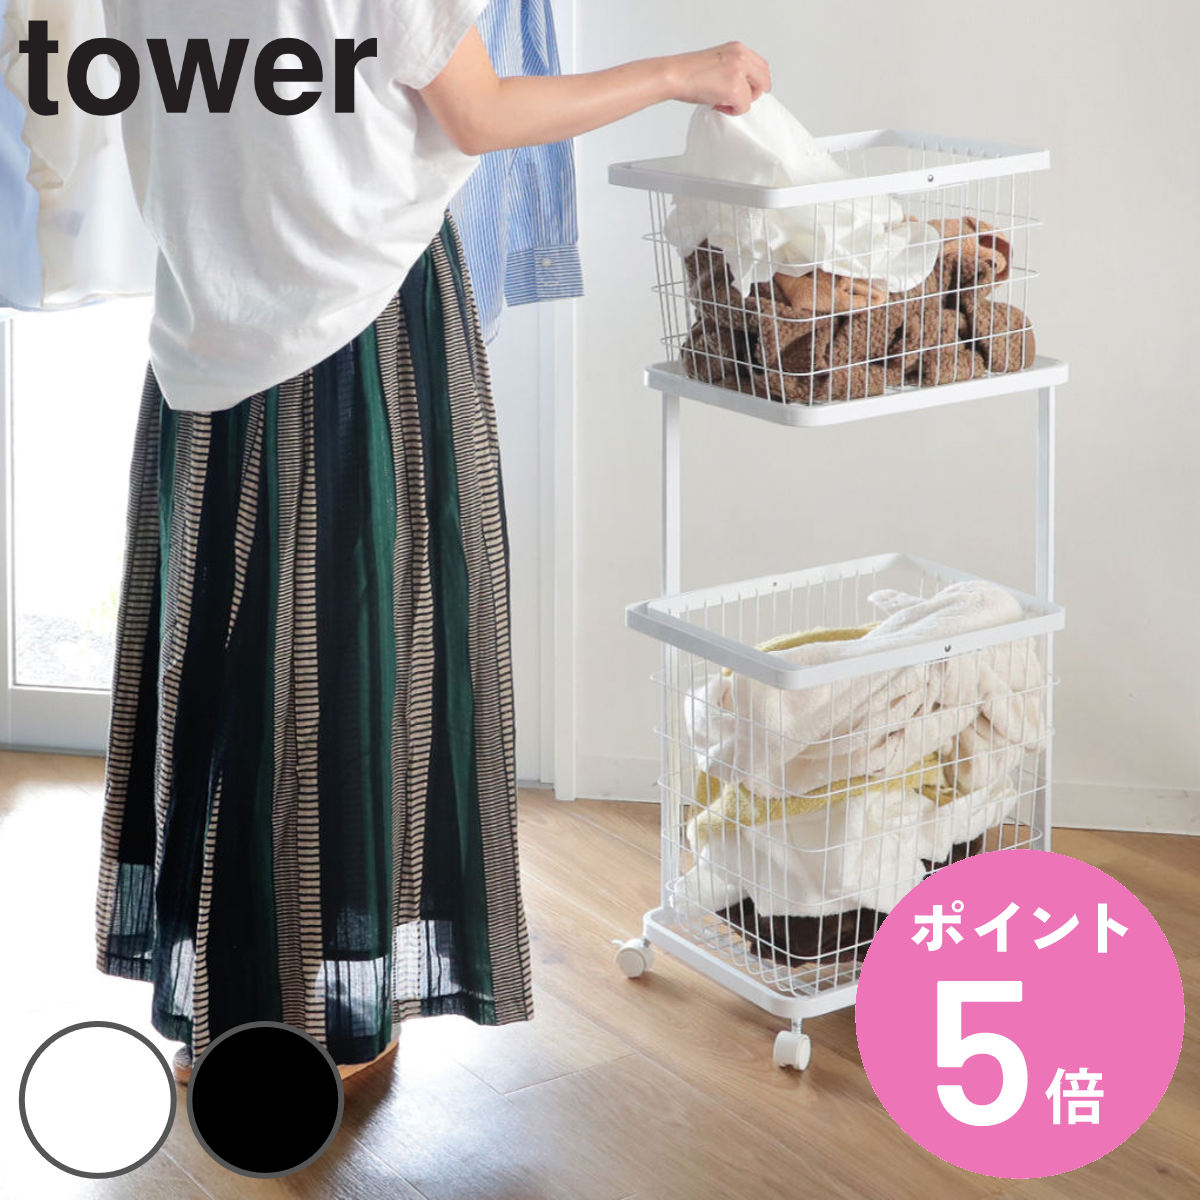 山崎実業 tower ランドリーワゴン＋バスケット タワー （ 3点セット 2段 ランドリーボックス ランドリーバスケット 洗濯ラック 洗濯カゴ